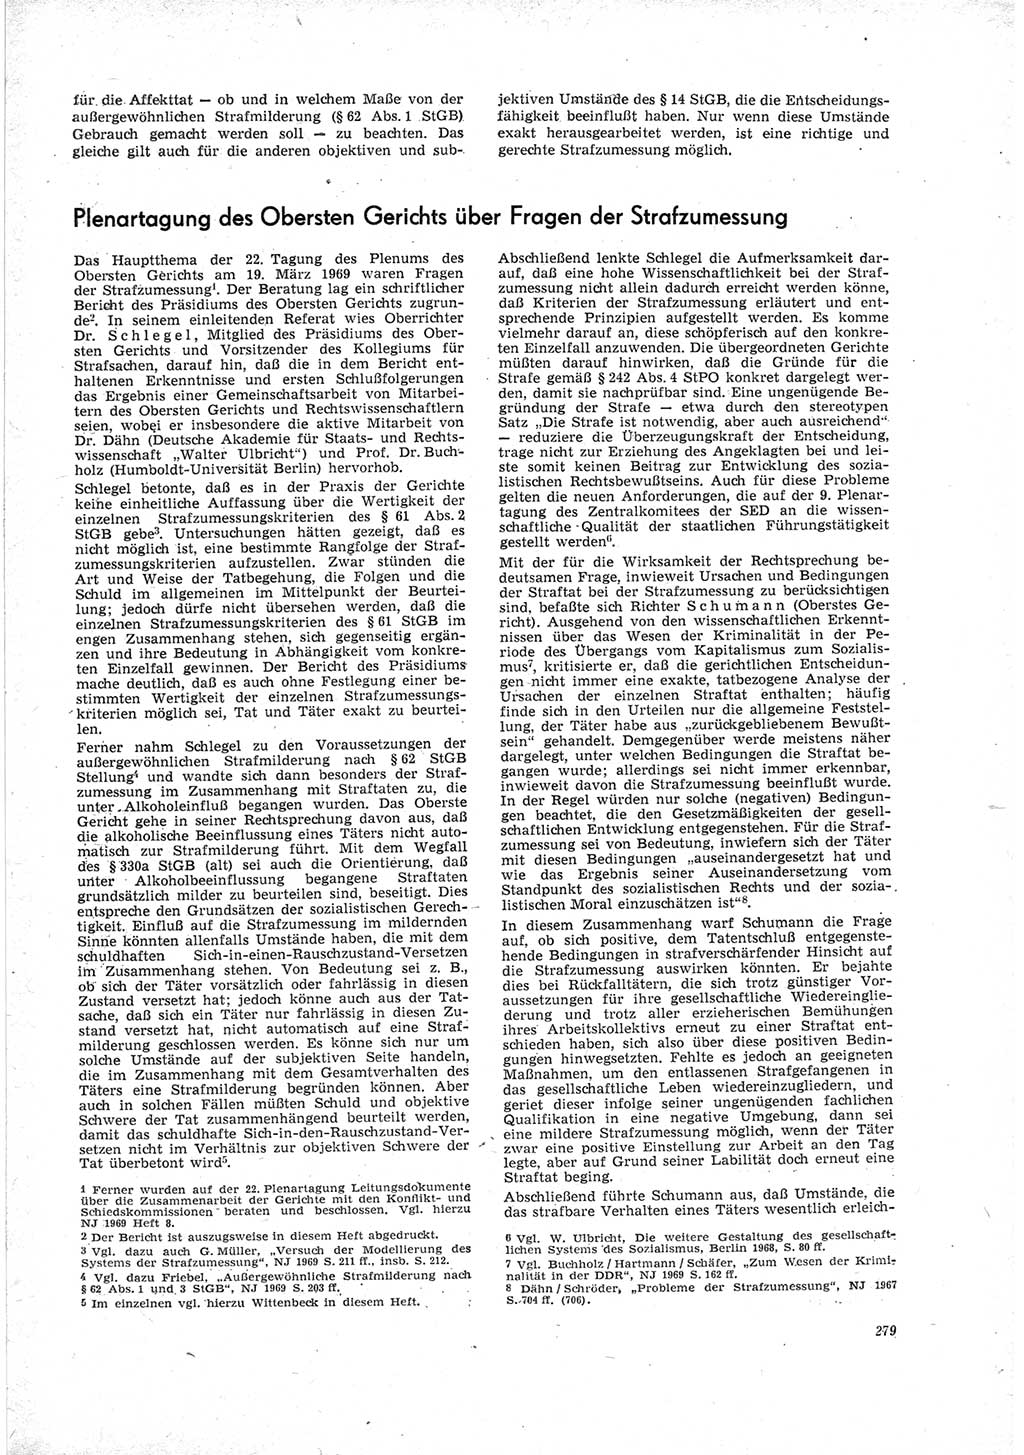 Neue Justiz (NJ), Zeitschrift für Recht und Rechtswissenschaft [Deutsche Demokratische Republik (DDR)], 23. Jahrgang 1969, Seite 279 (NJ DDR 1969, S. 279)